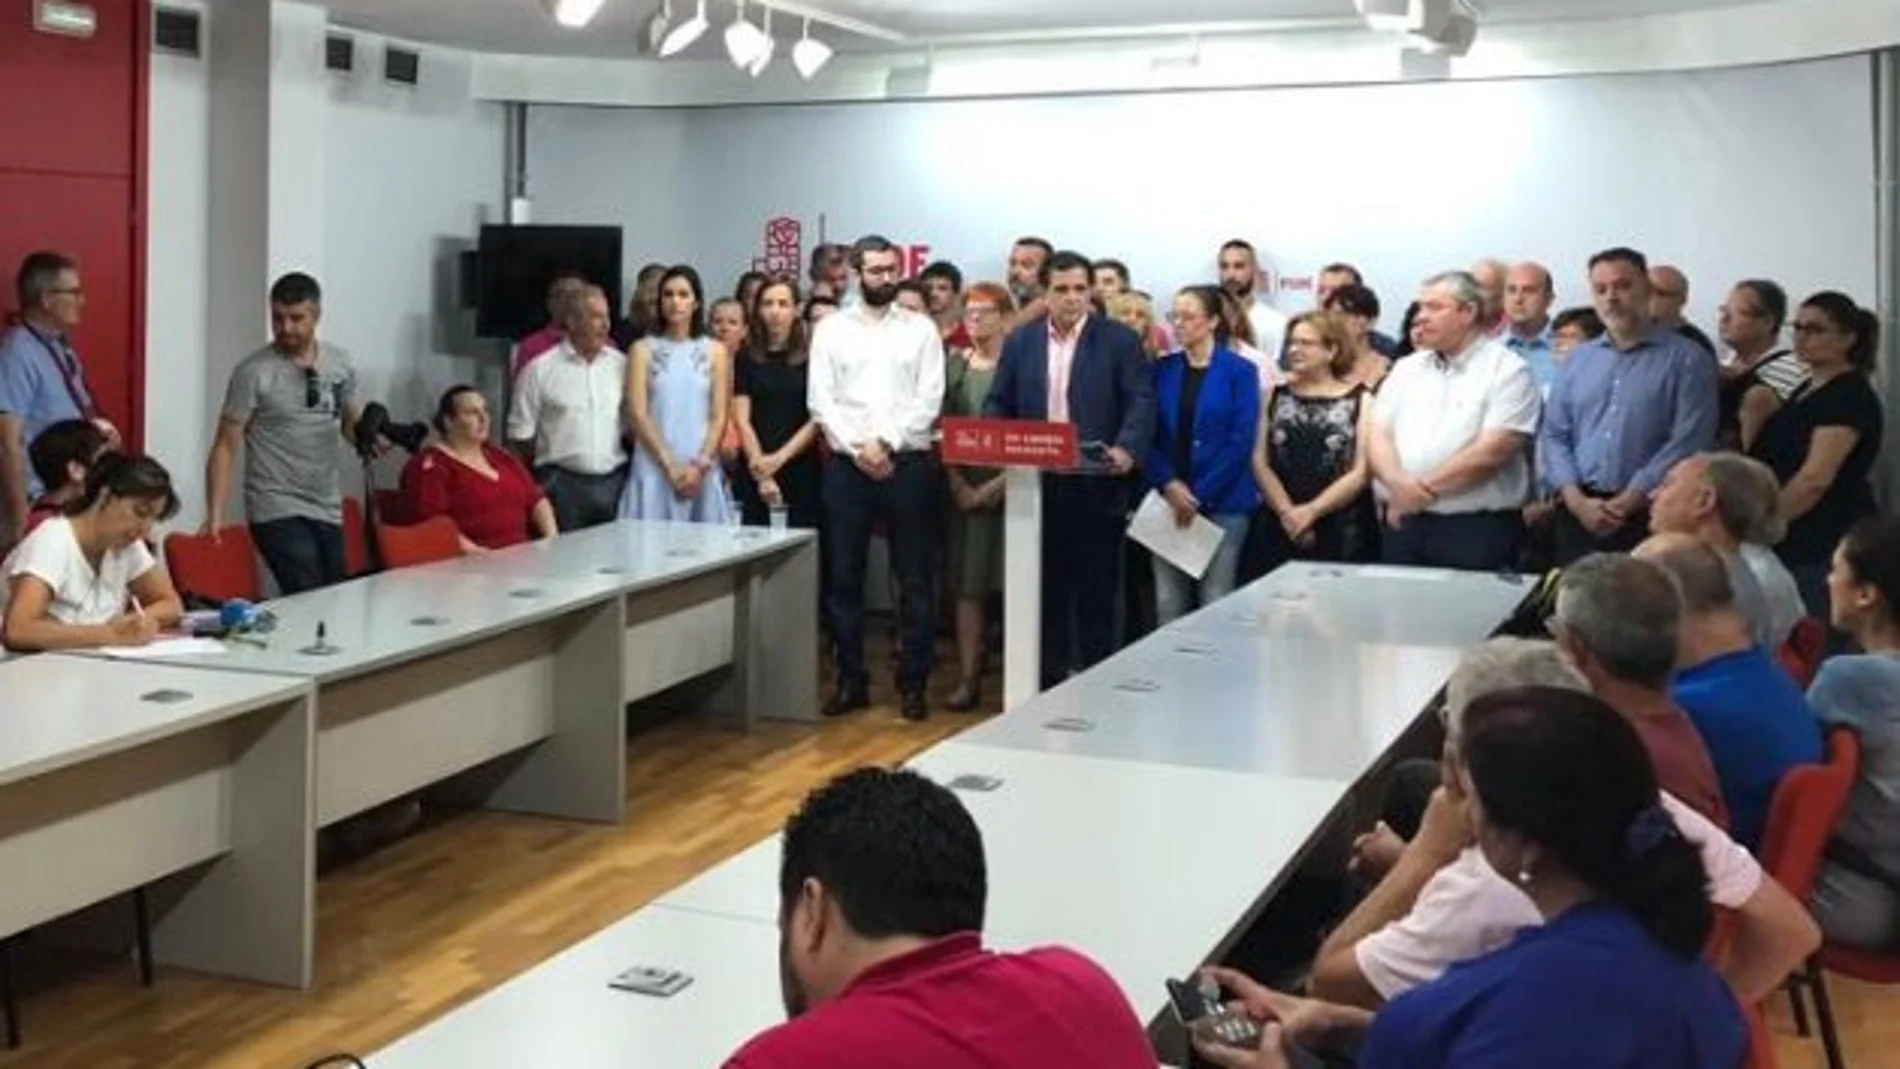 Medio centenar de concejales, miembros de la ejecutiva municipal, pedáneos, portavoces y vocales del PSOE de Murcia se reunieron en la sede del PSRM para respaldar la decisión de que el AVE llegue soterrado a Murcia en 2020. LA RAZÓN